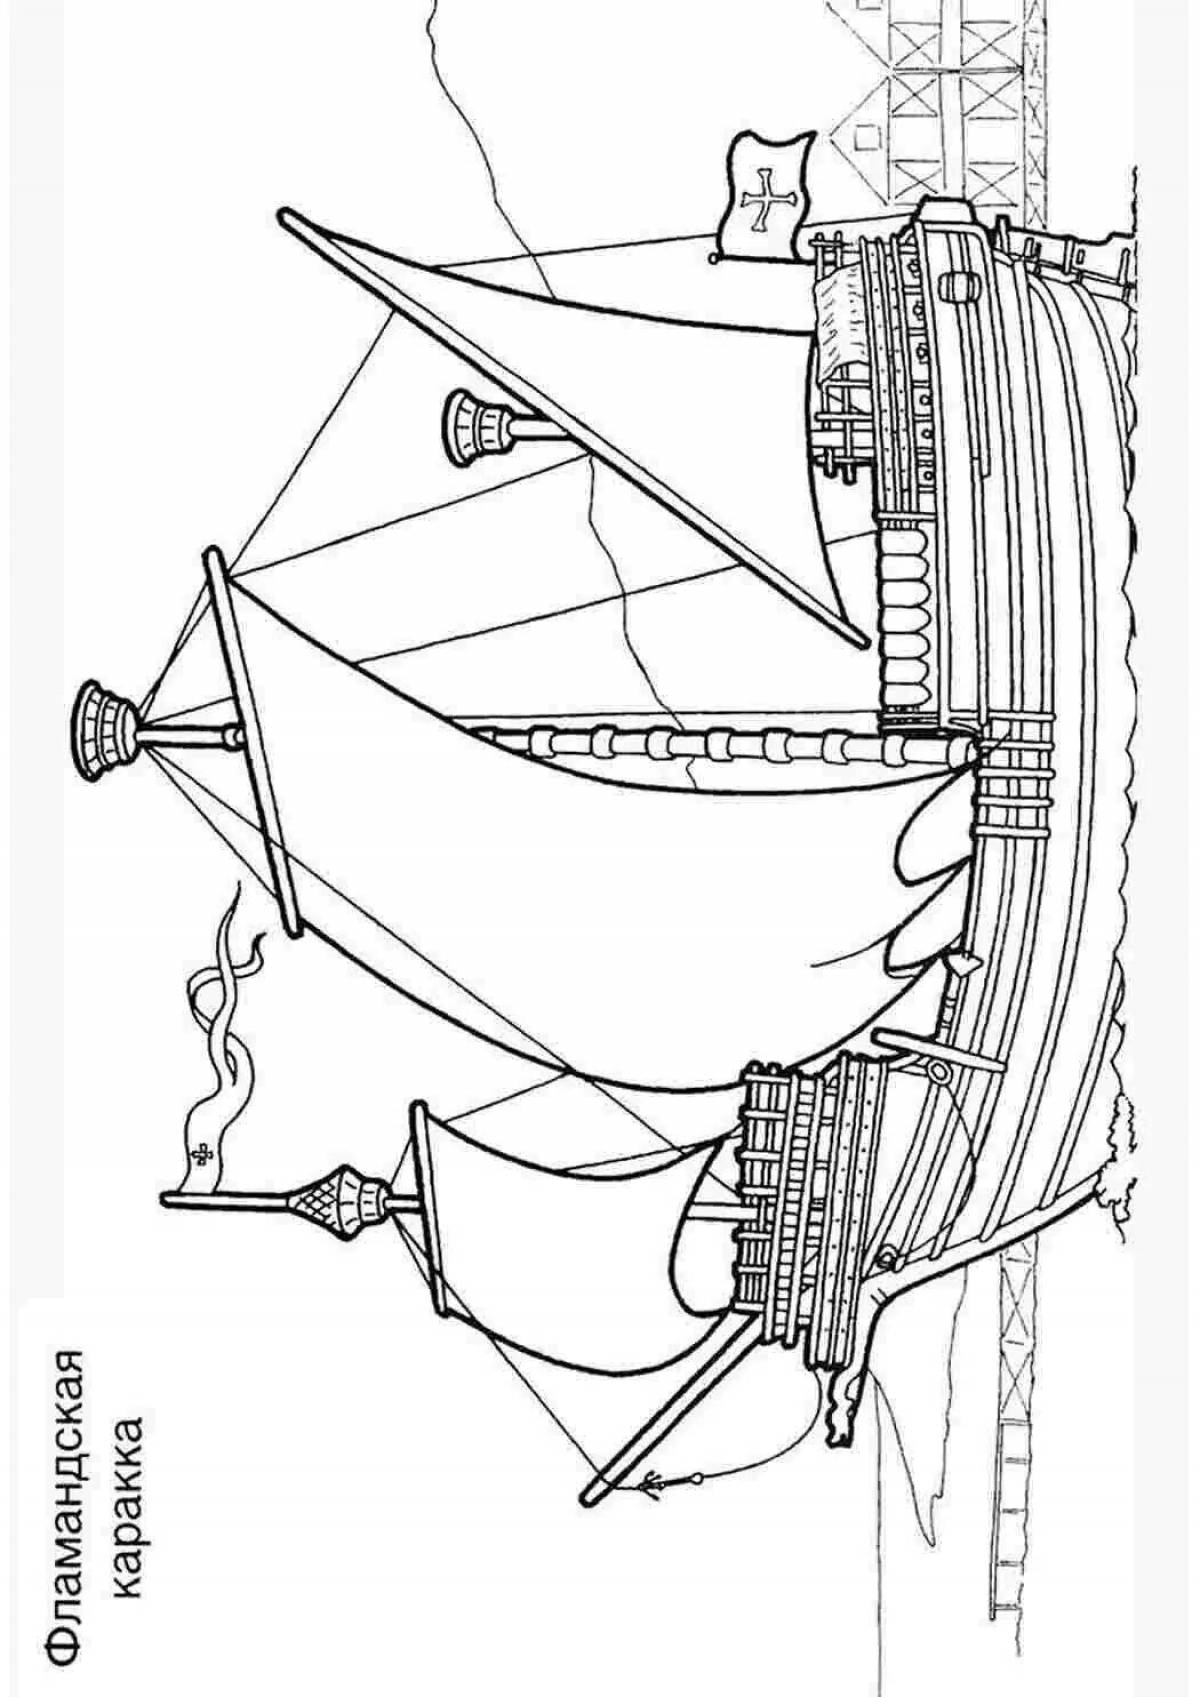 Petra's elegant ship